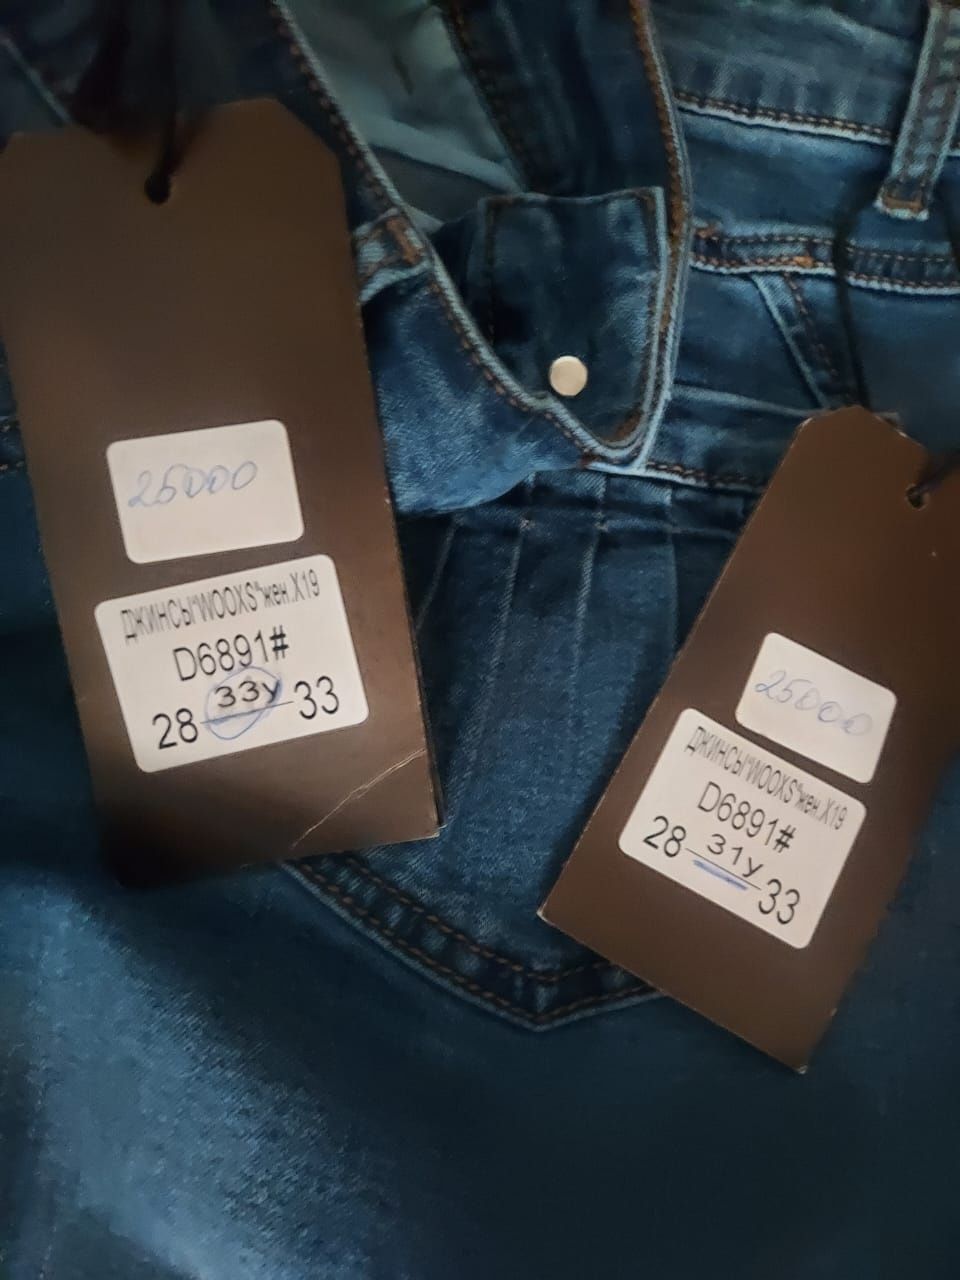 Продам новые джинсовые юбки 31 и 33 размеры